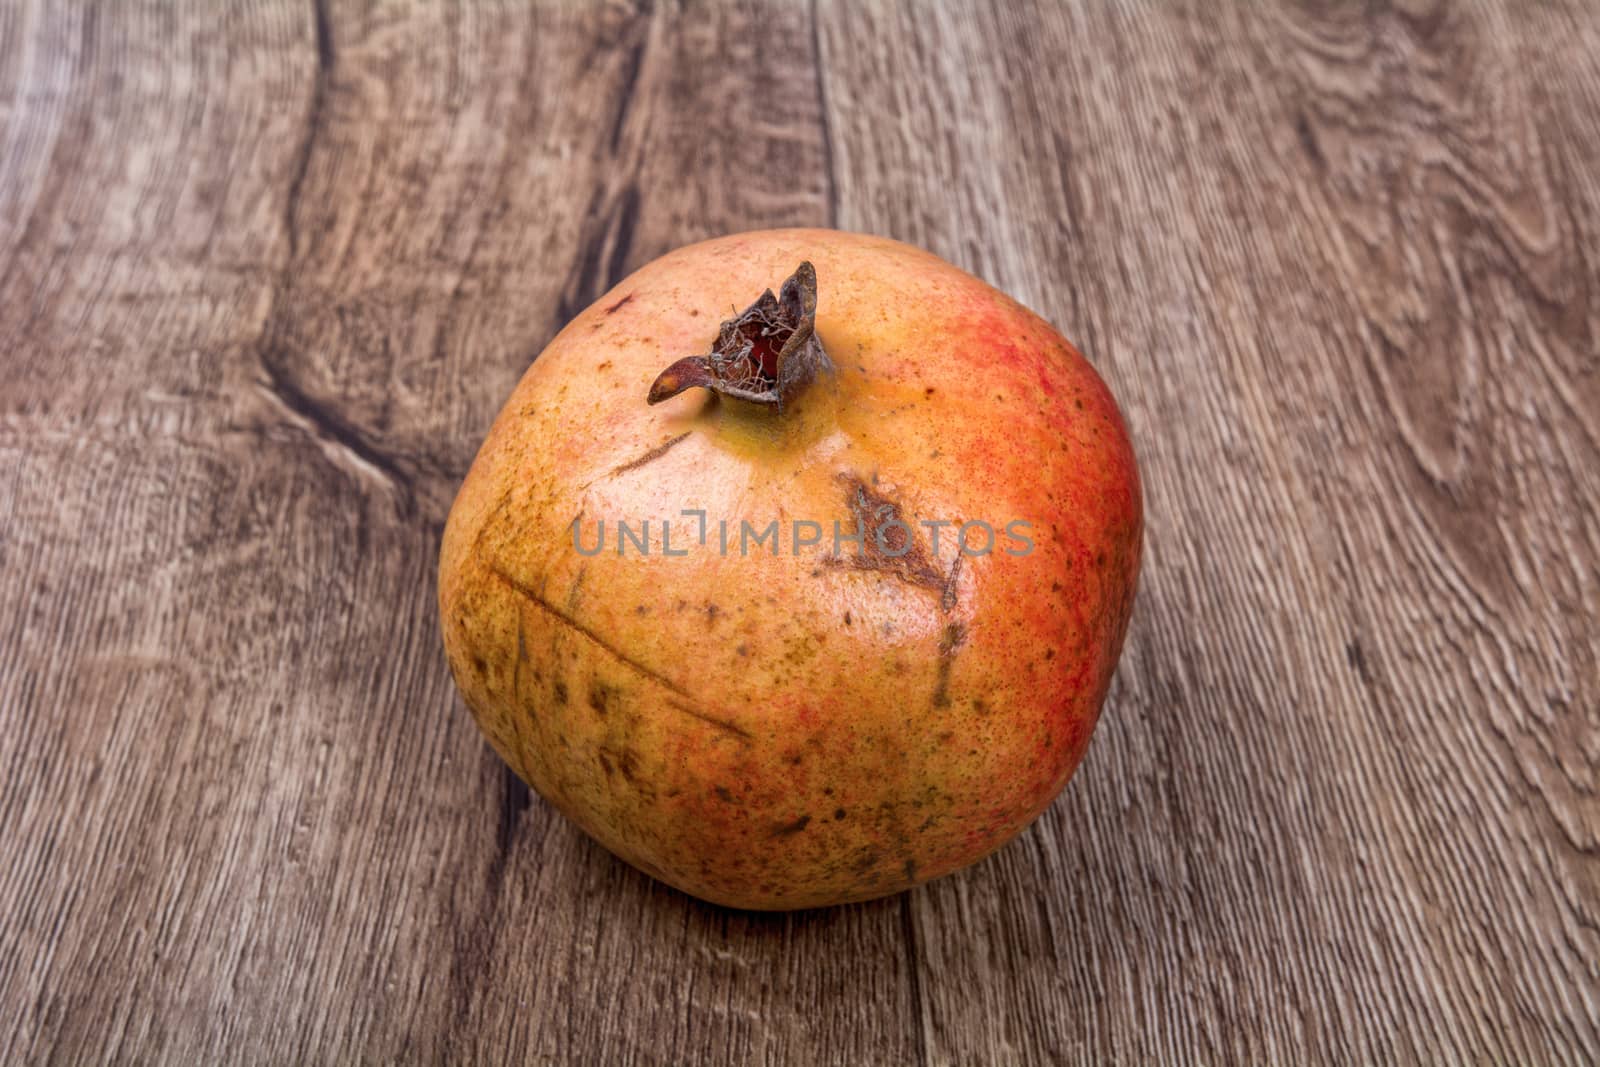 Pomegranate on a wooden background by neryx